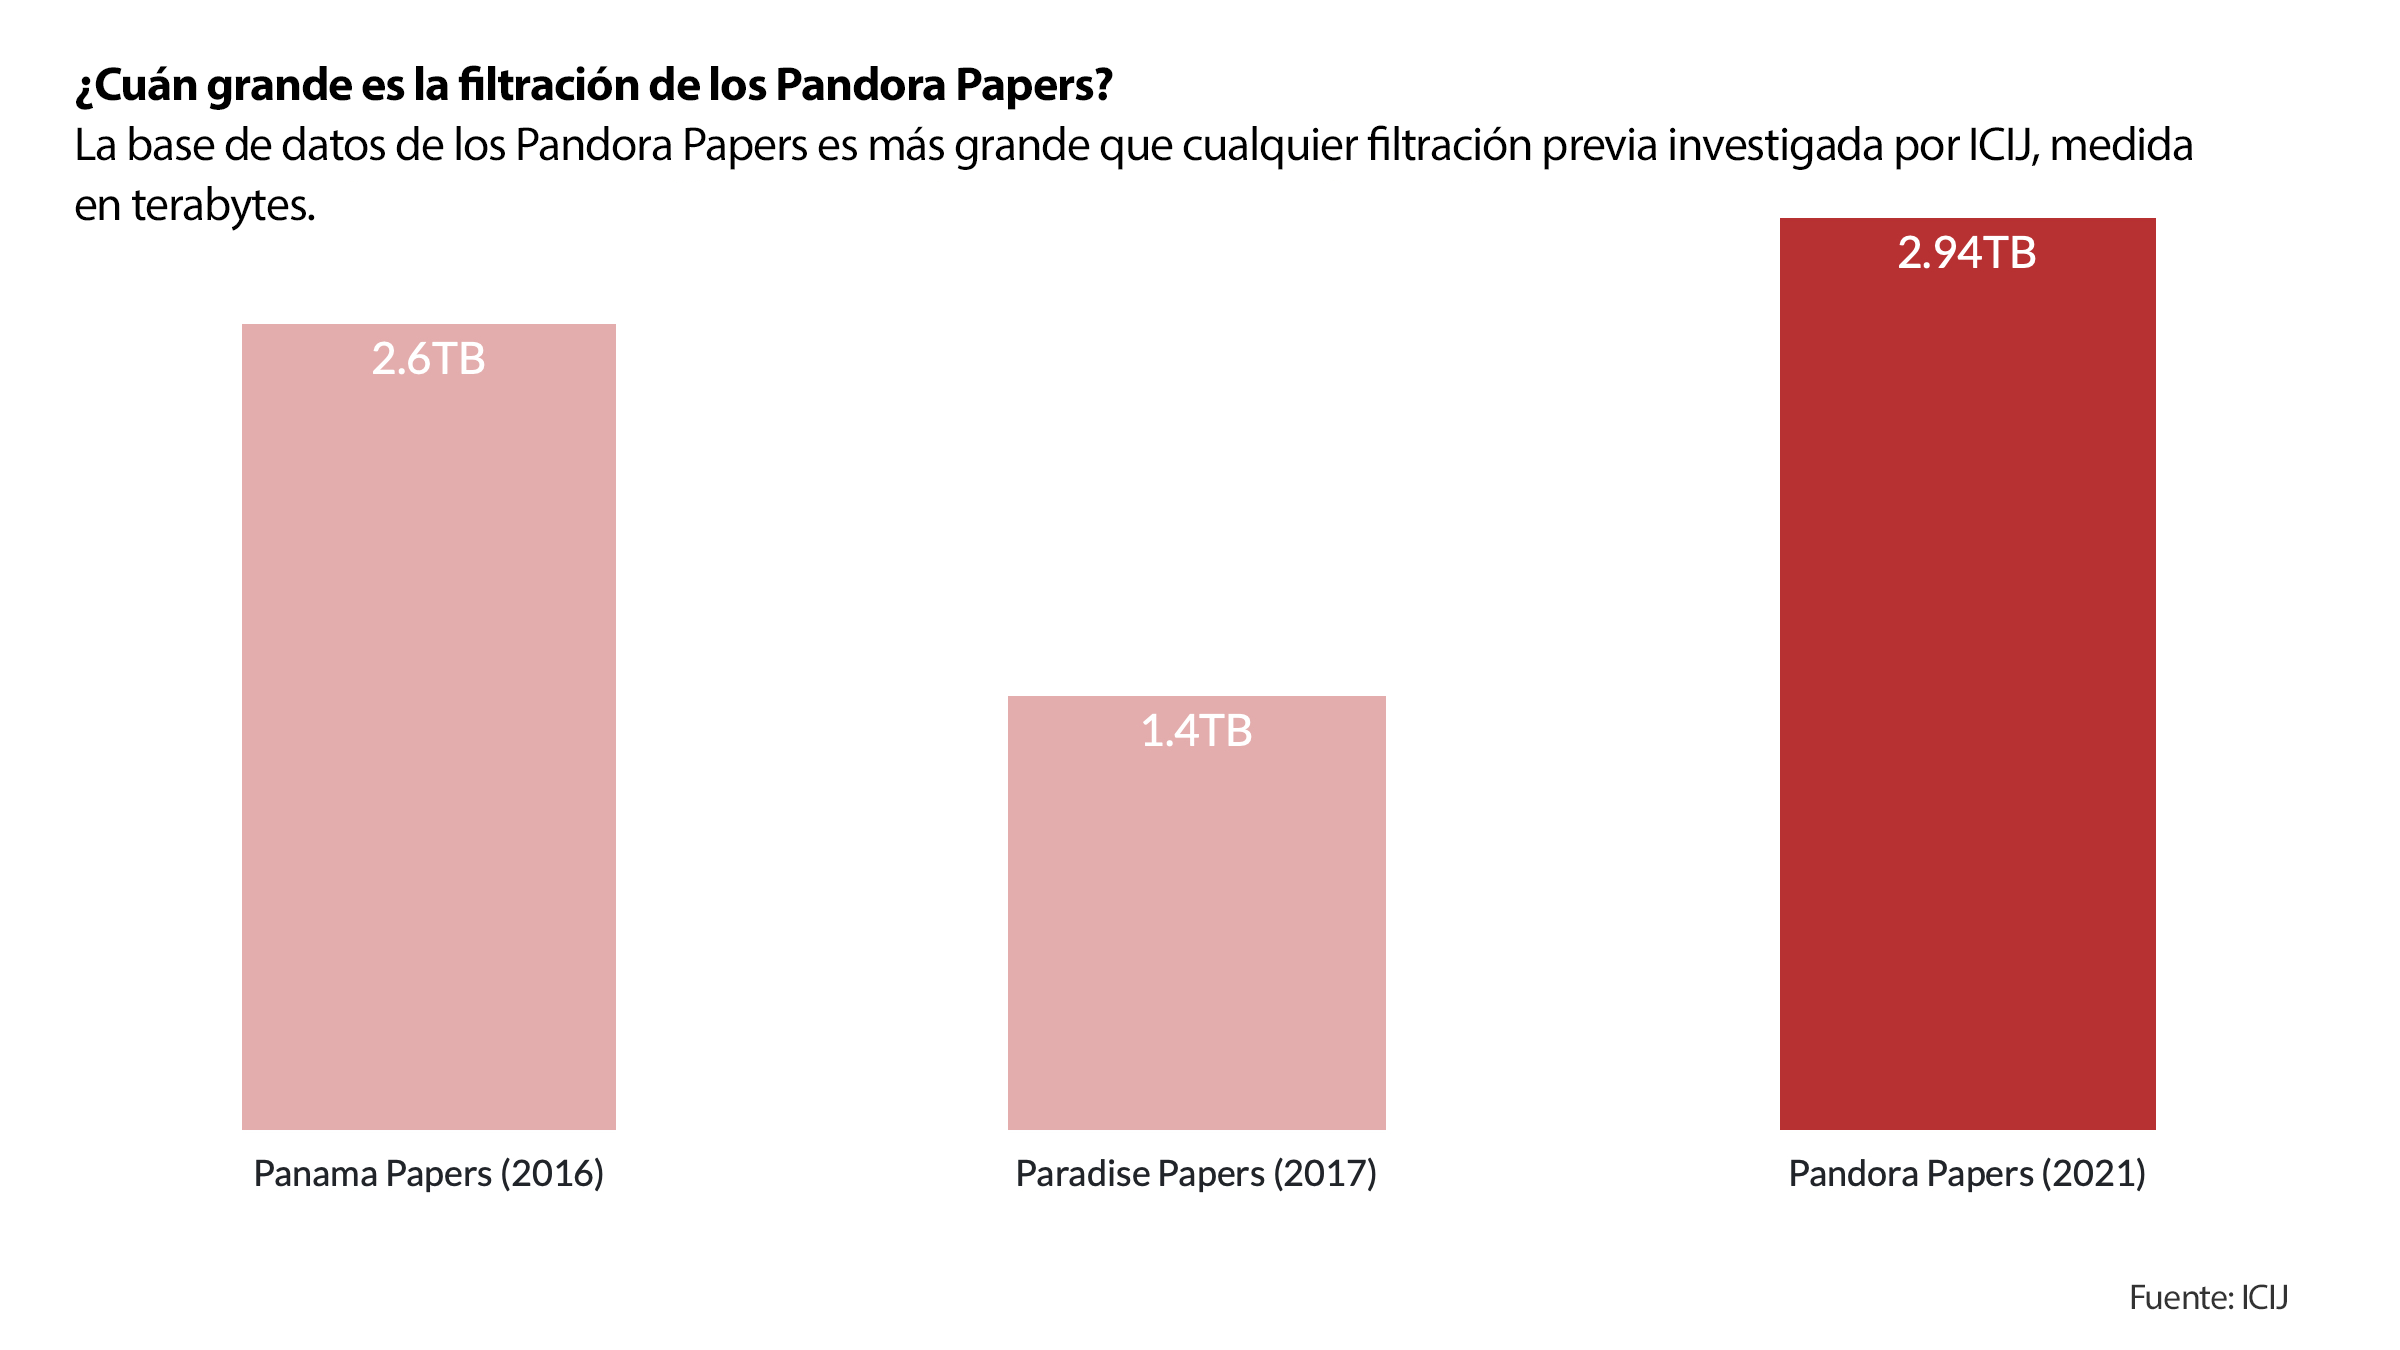 Cuán grande es Pandora Papers